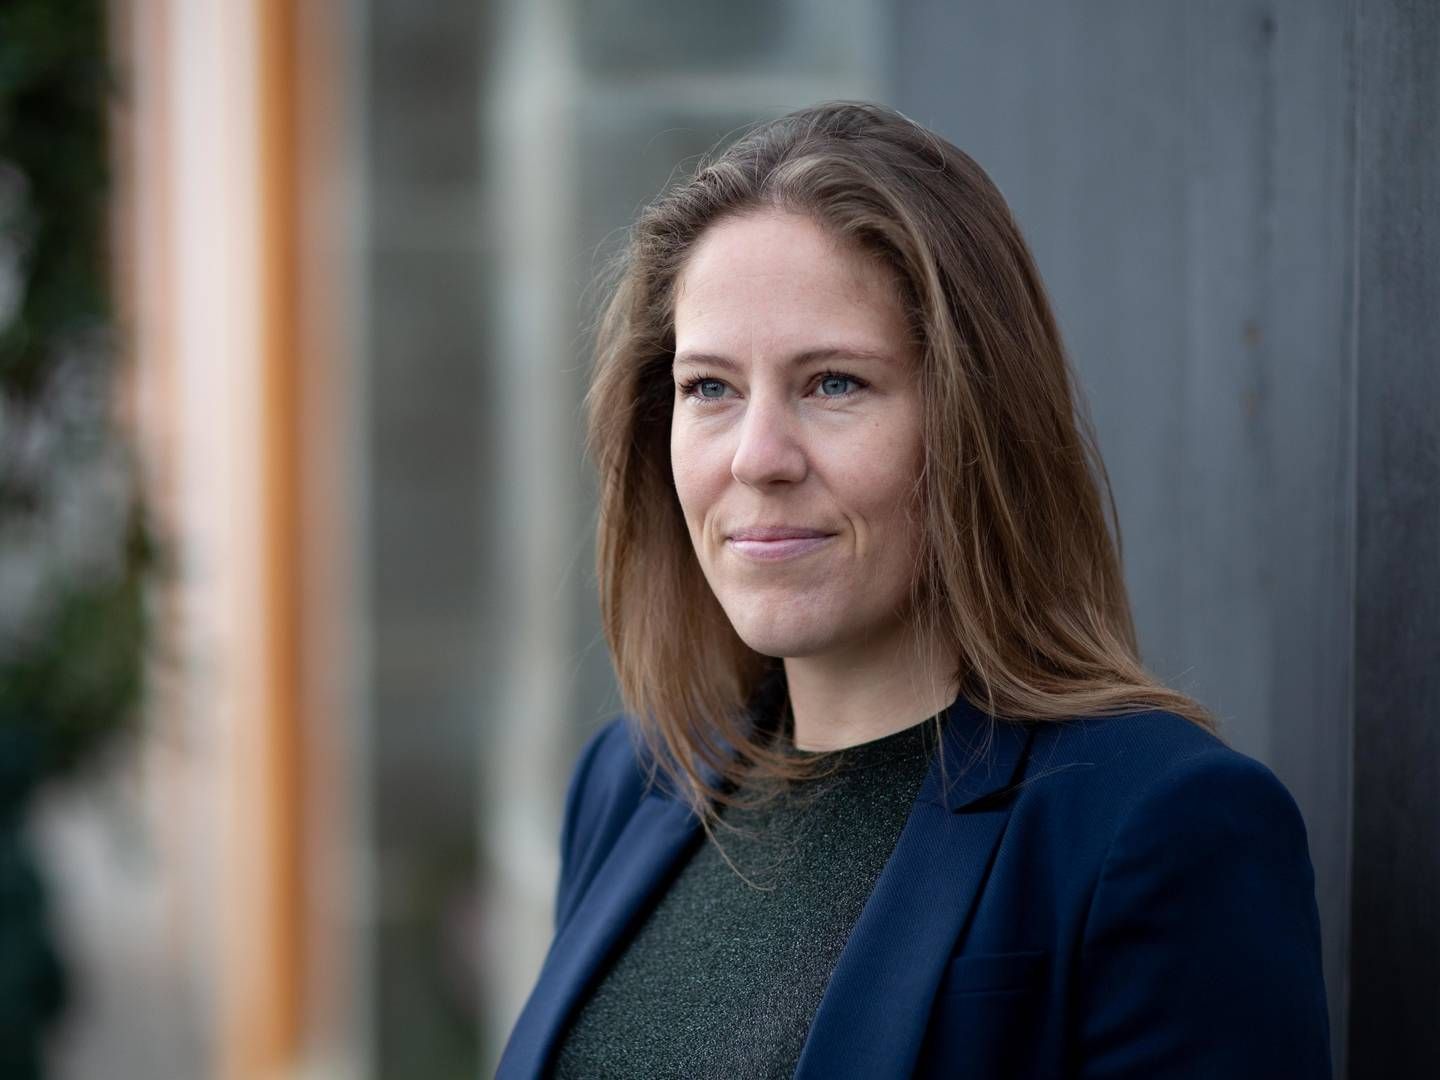 Adm. direktør i Hove, Maja Vonsild Jørgensen. | Foto: Hove